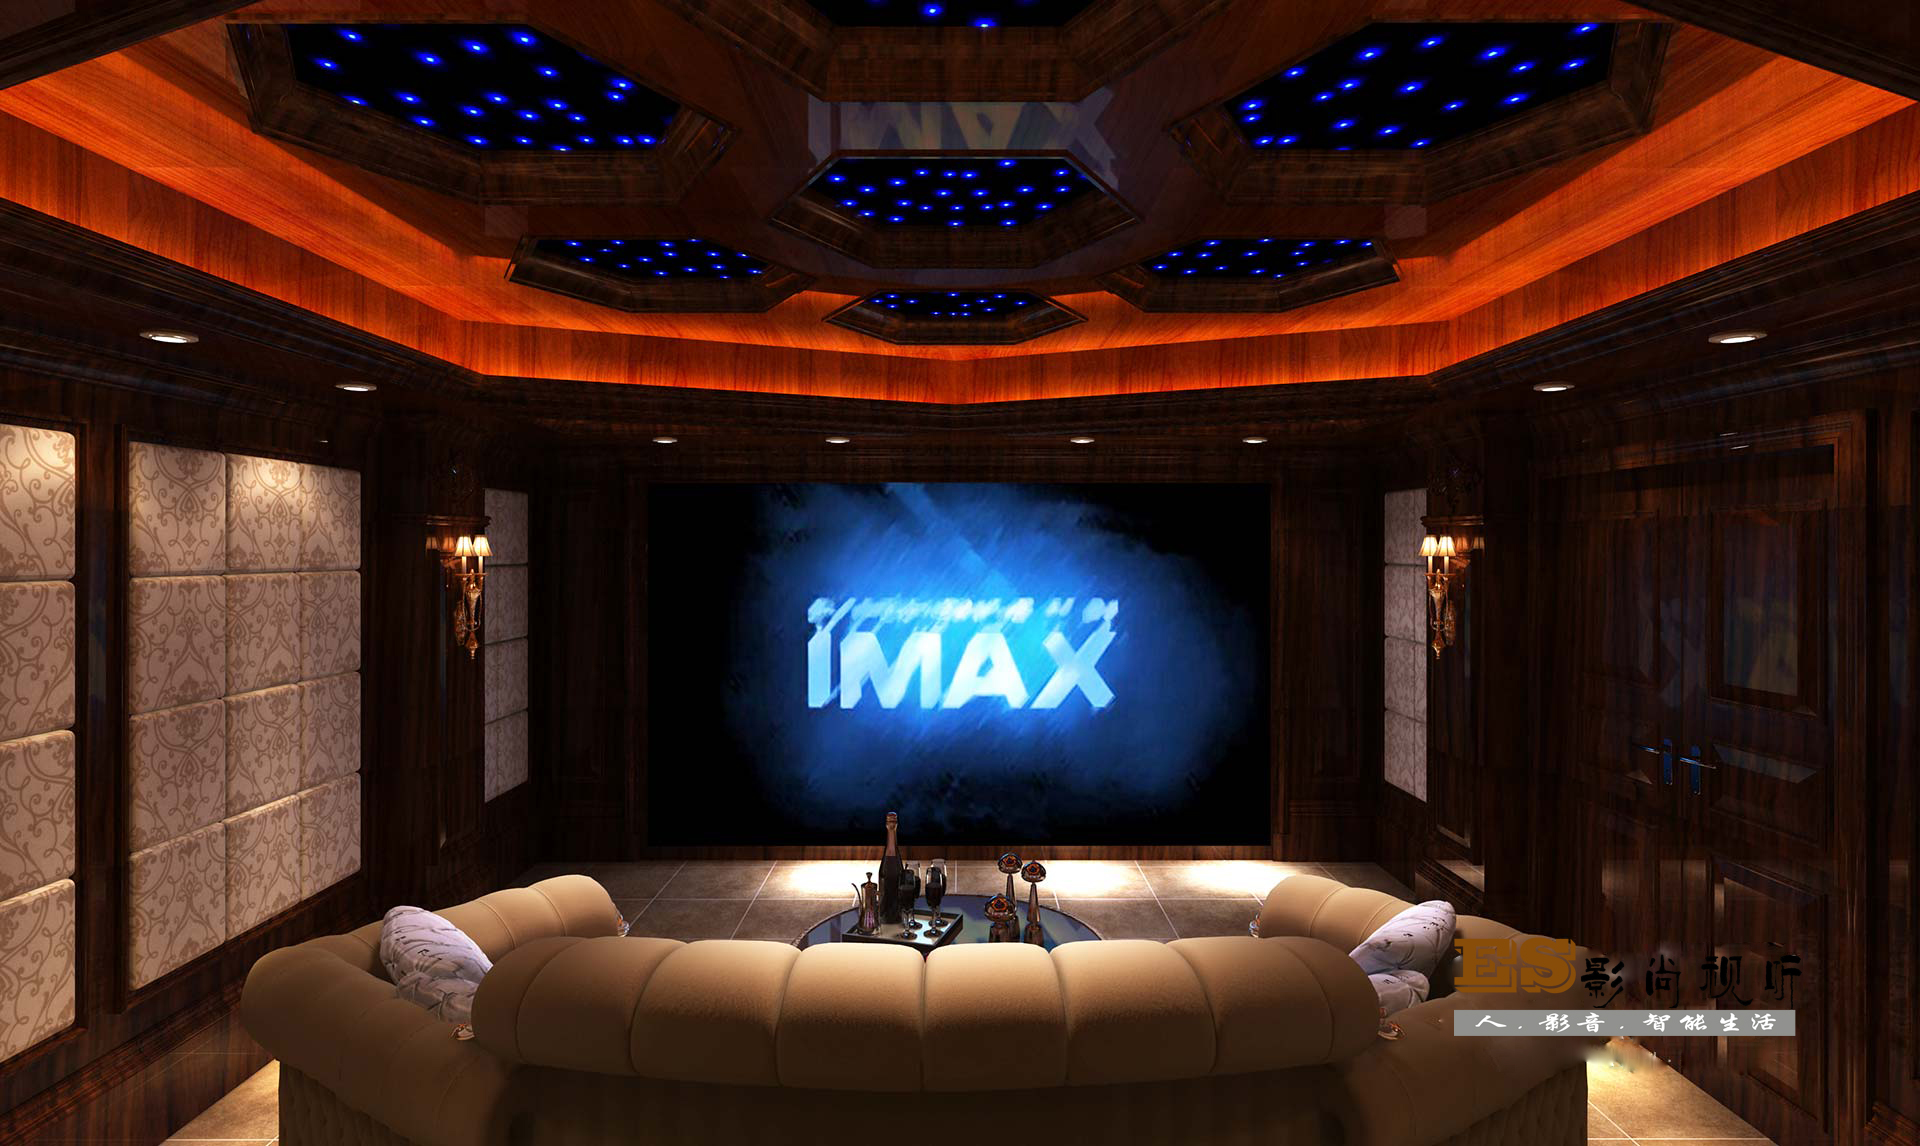 极致影院- CineMax - 私人家庭影院案例分享-高清时代网